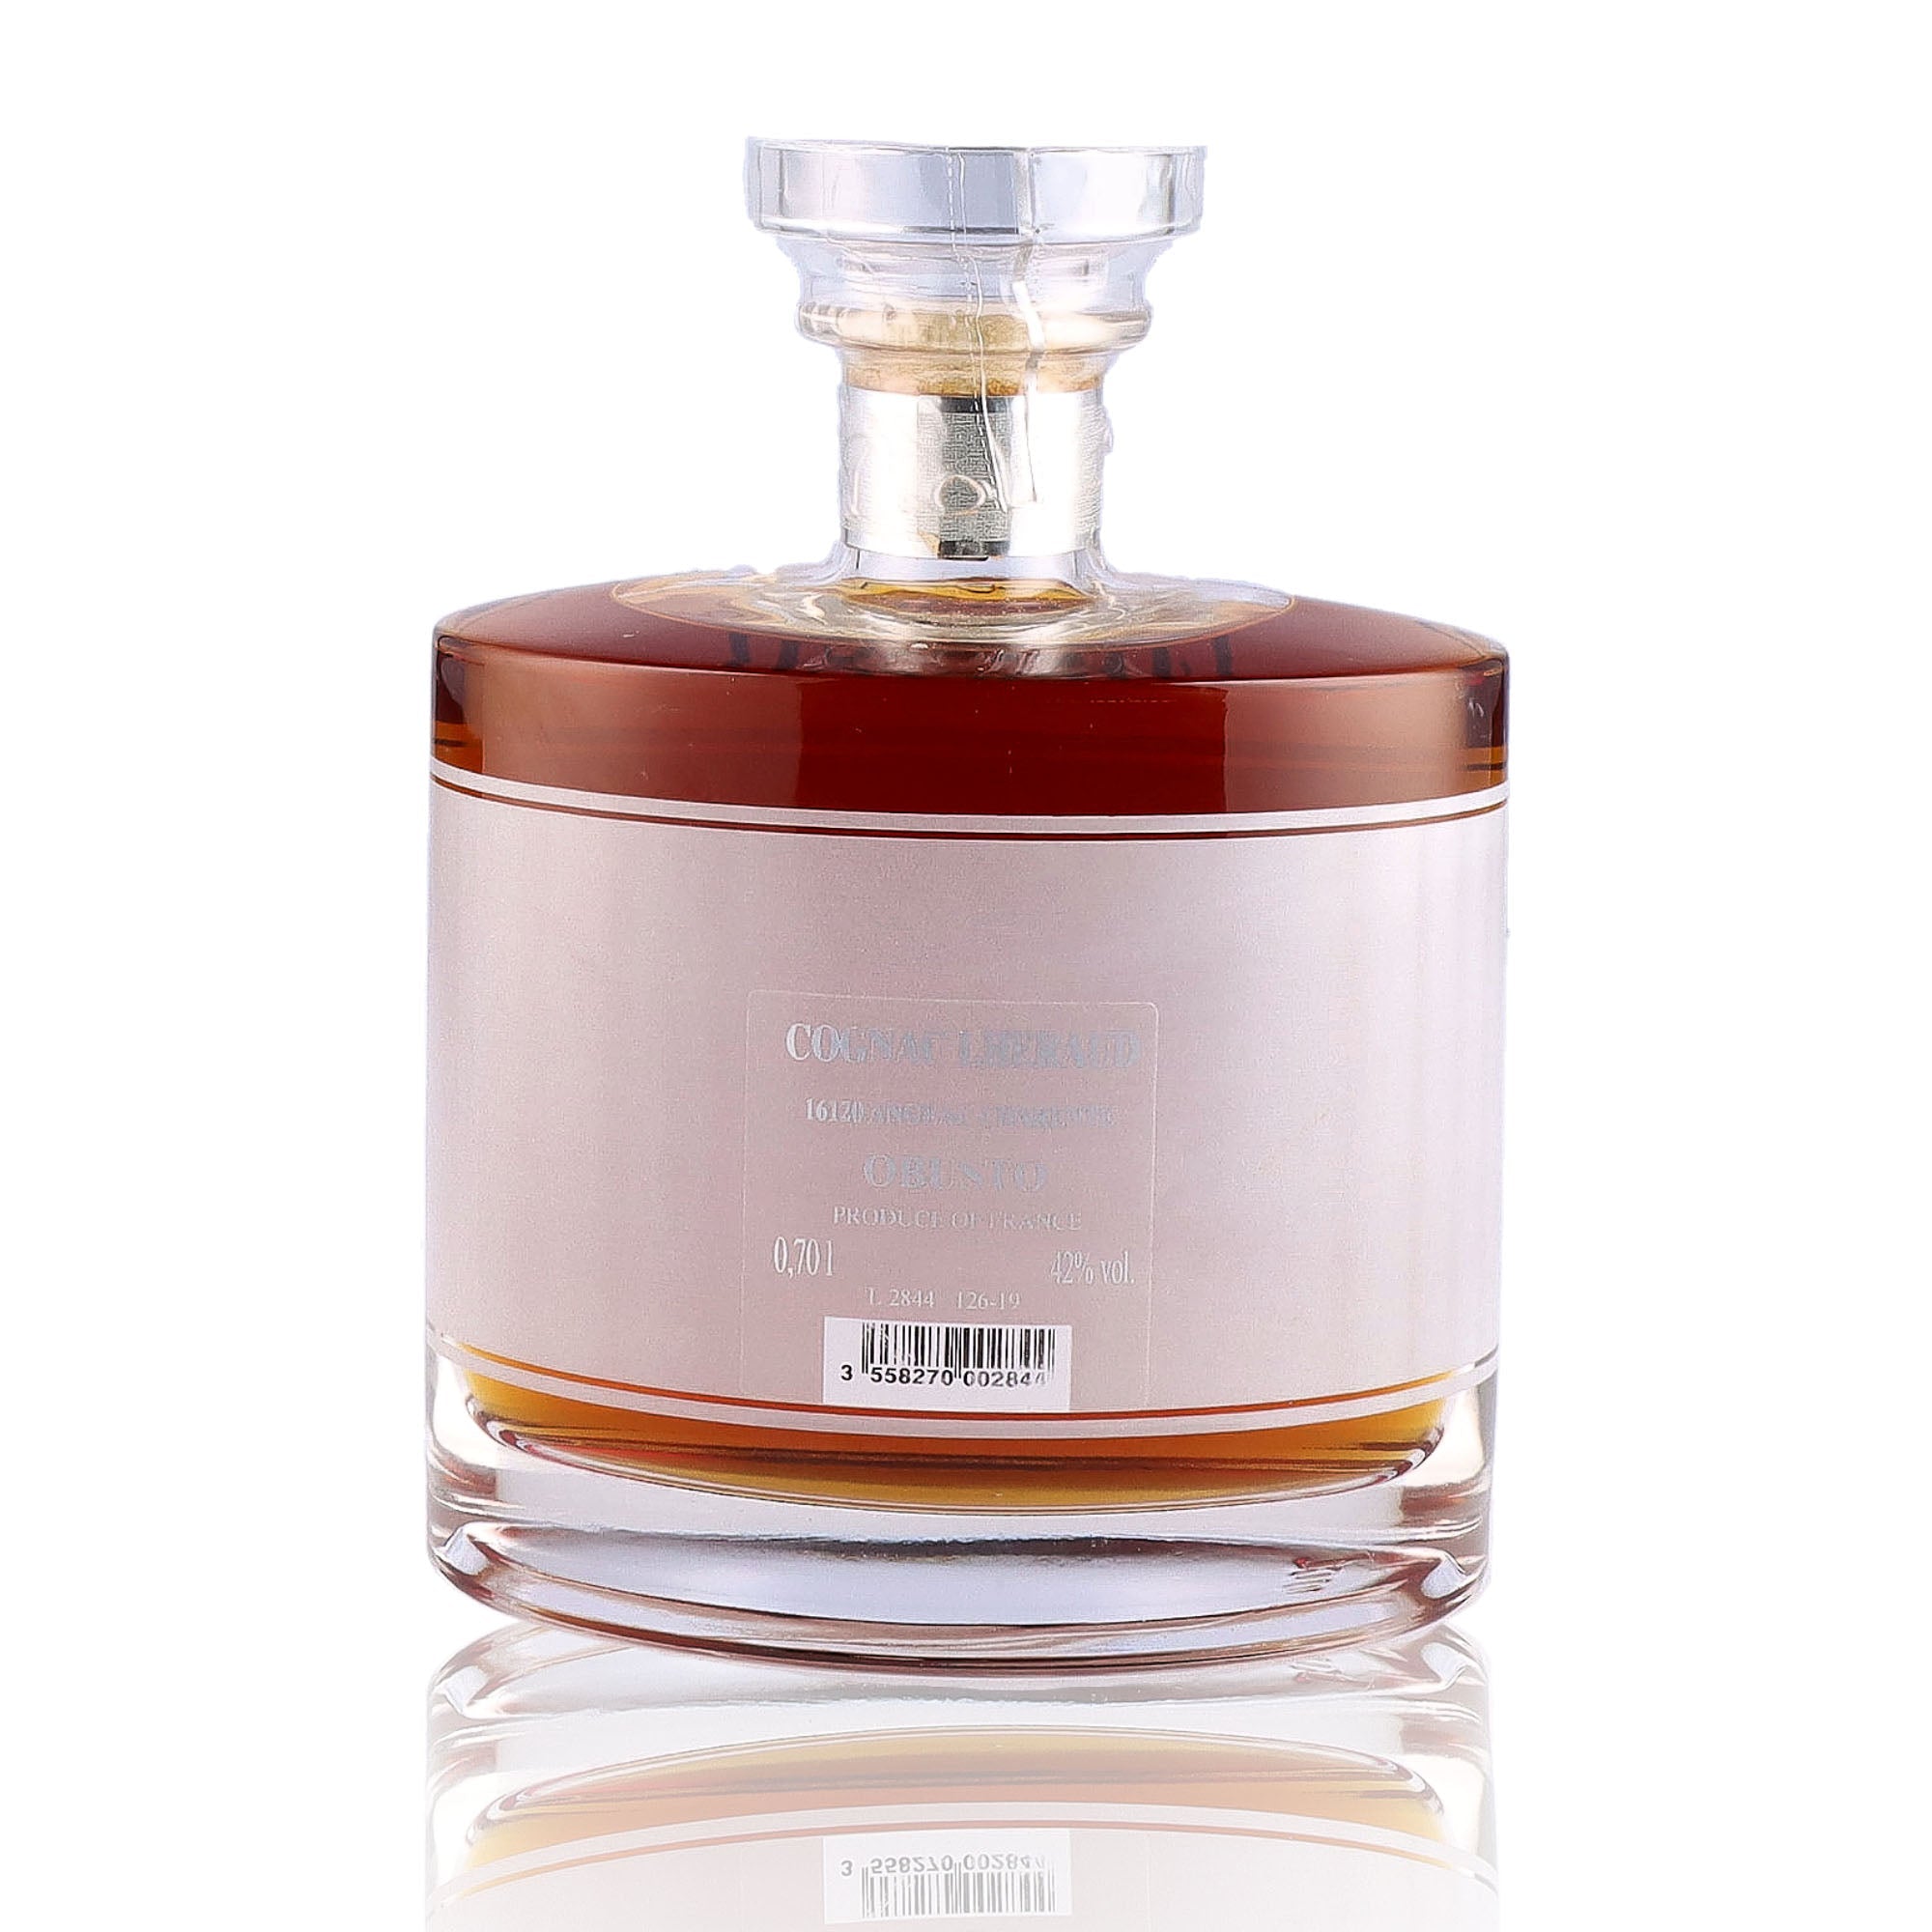 Une bouteille de Cognac, de la marque Lheraud, nommée Obusto.